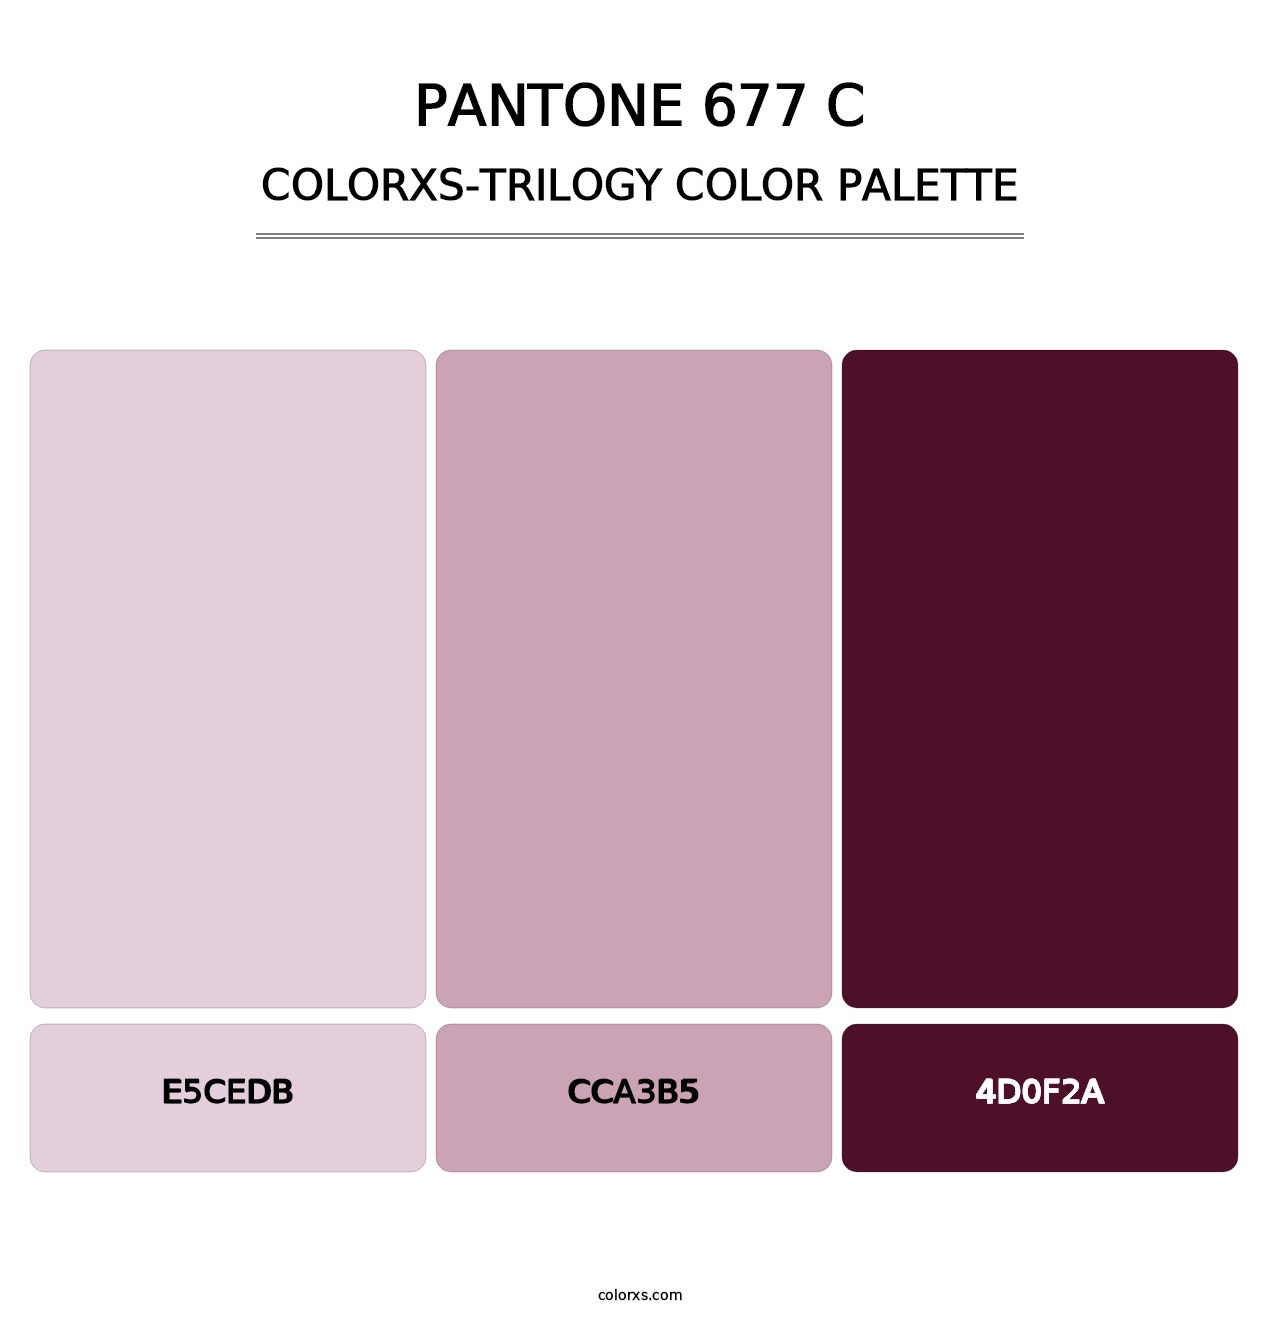 PANTONE 677 C - Colorxs Trilogy Palette